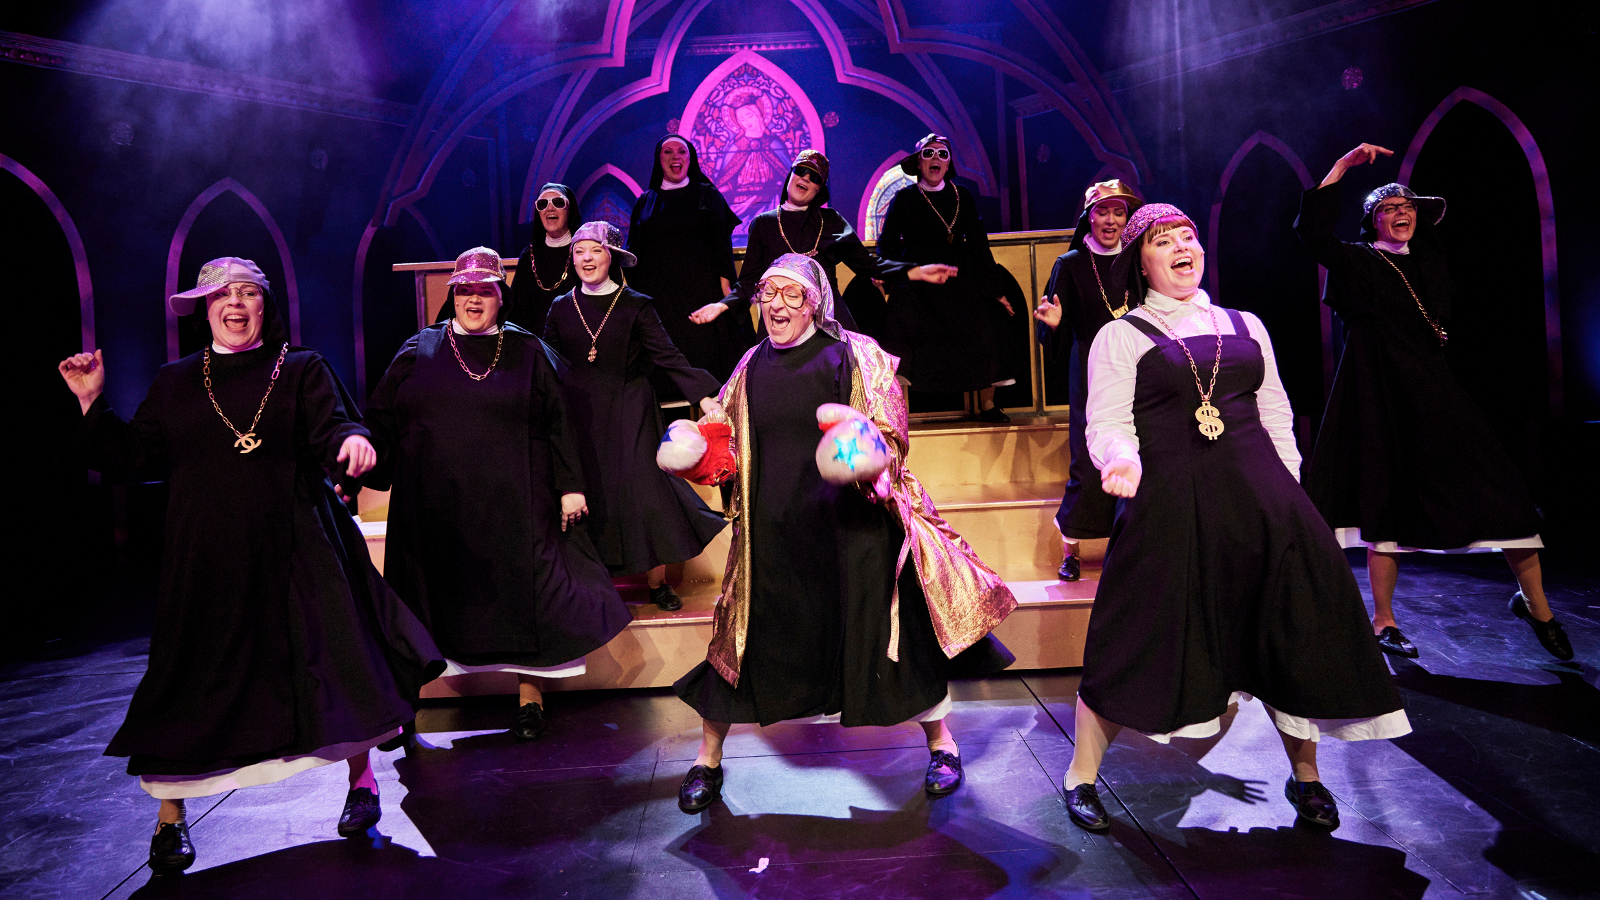 Kuvassa on yksitoista nunnaa helmat liehuen laulamassa mustissa kaavuissaan.